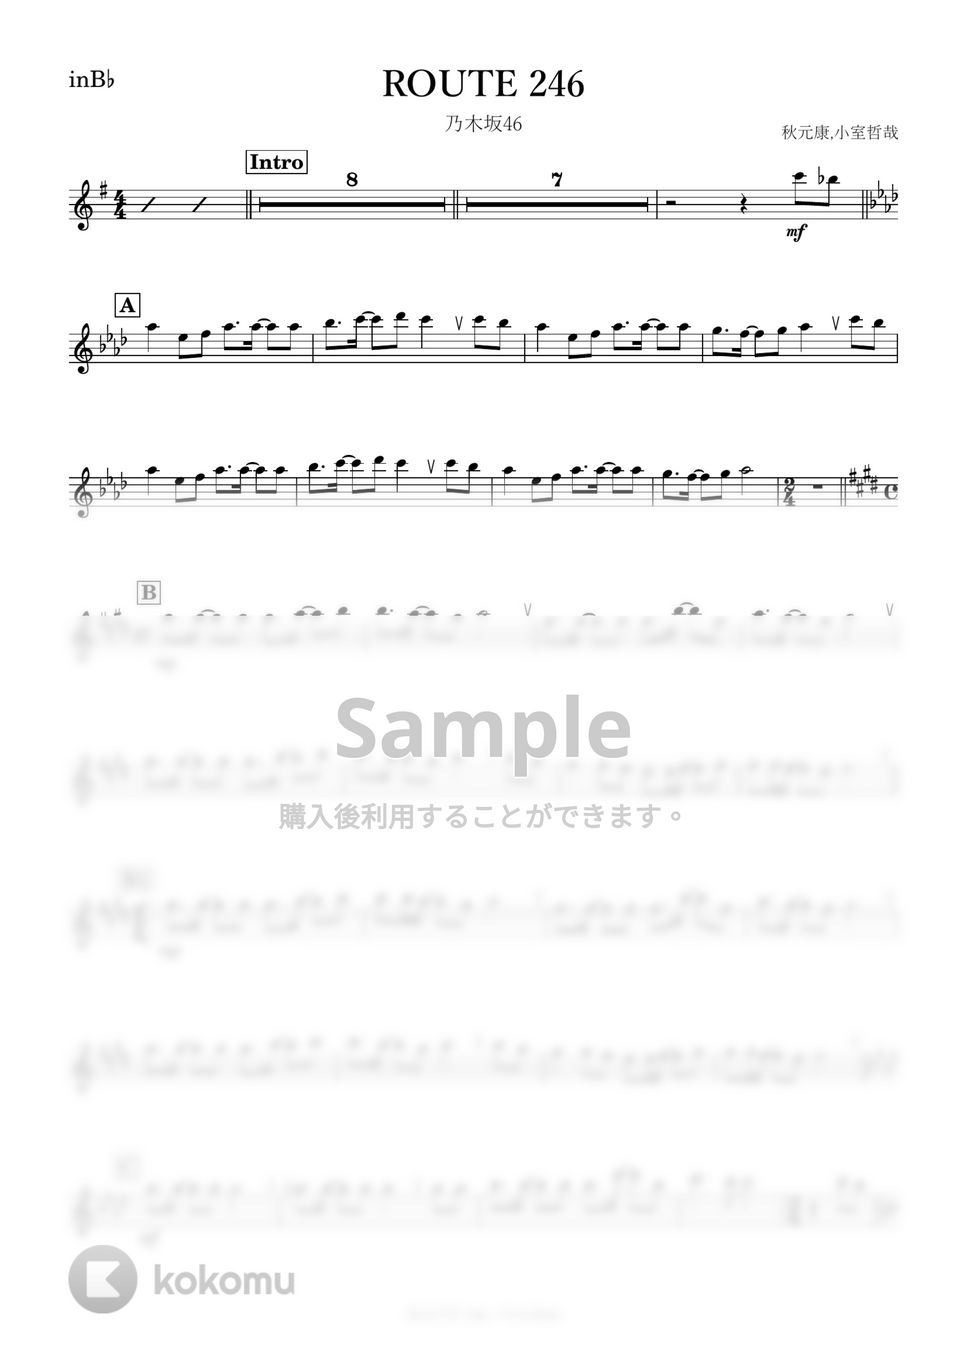 乃木坂46 - ROUTE 246 (B♭) by kanamusic